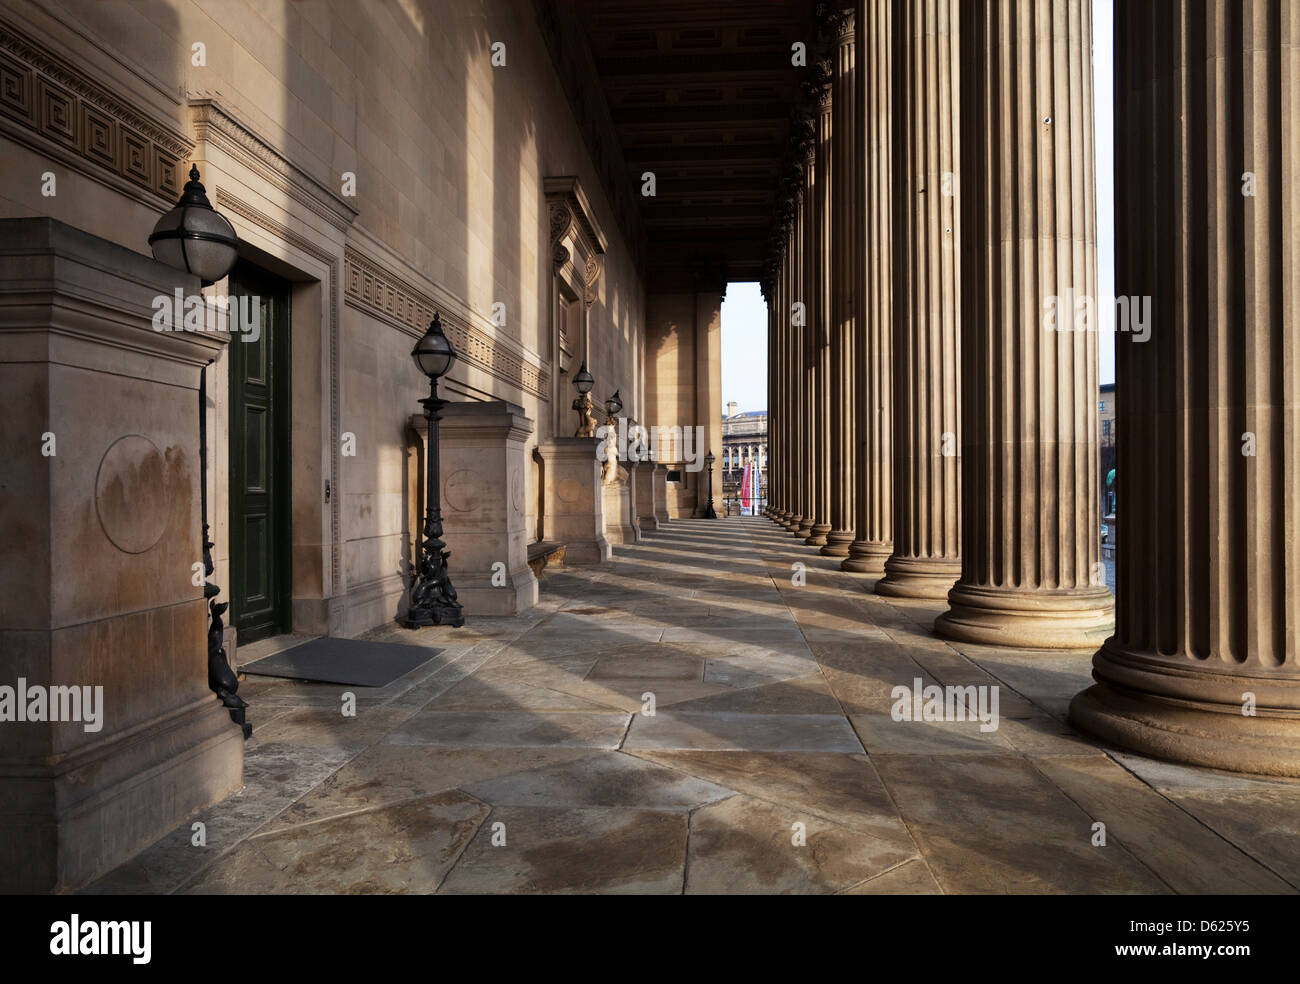 Der zentrale Portikus der korinthischen Säulen, St. George's Hall, Lime Street, Liverpool, Merseyside, England. Filmset für 'The Batman' Film - 2020 Stockfoto